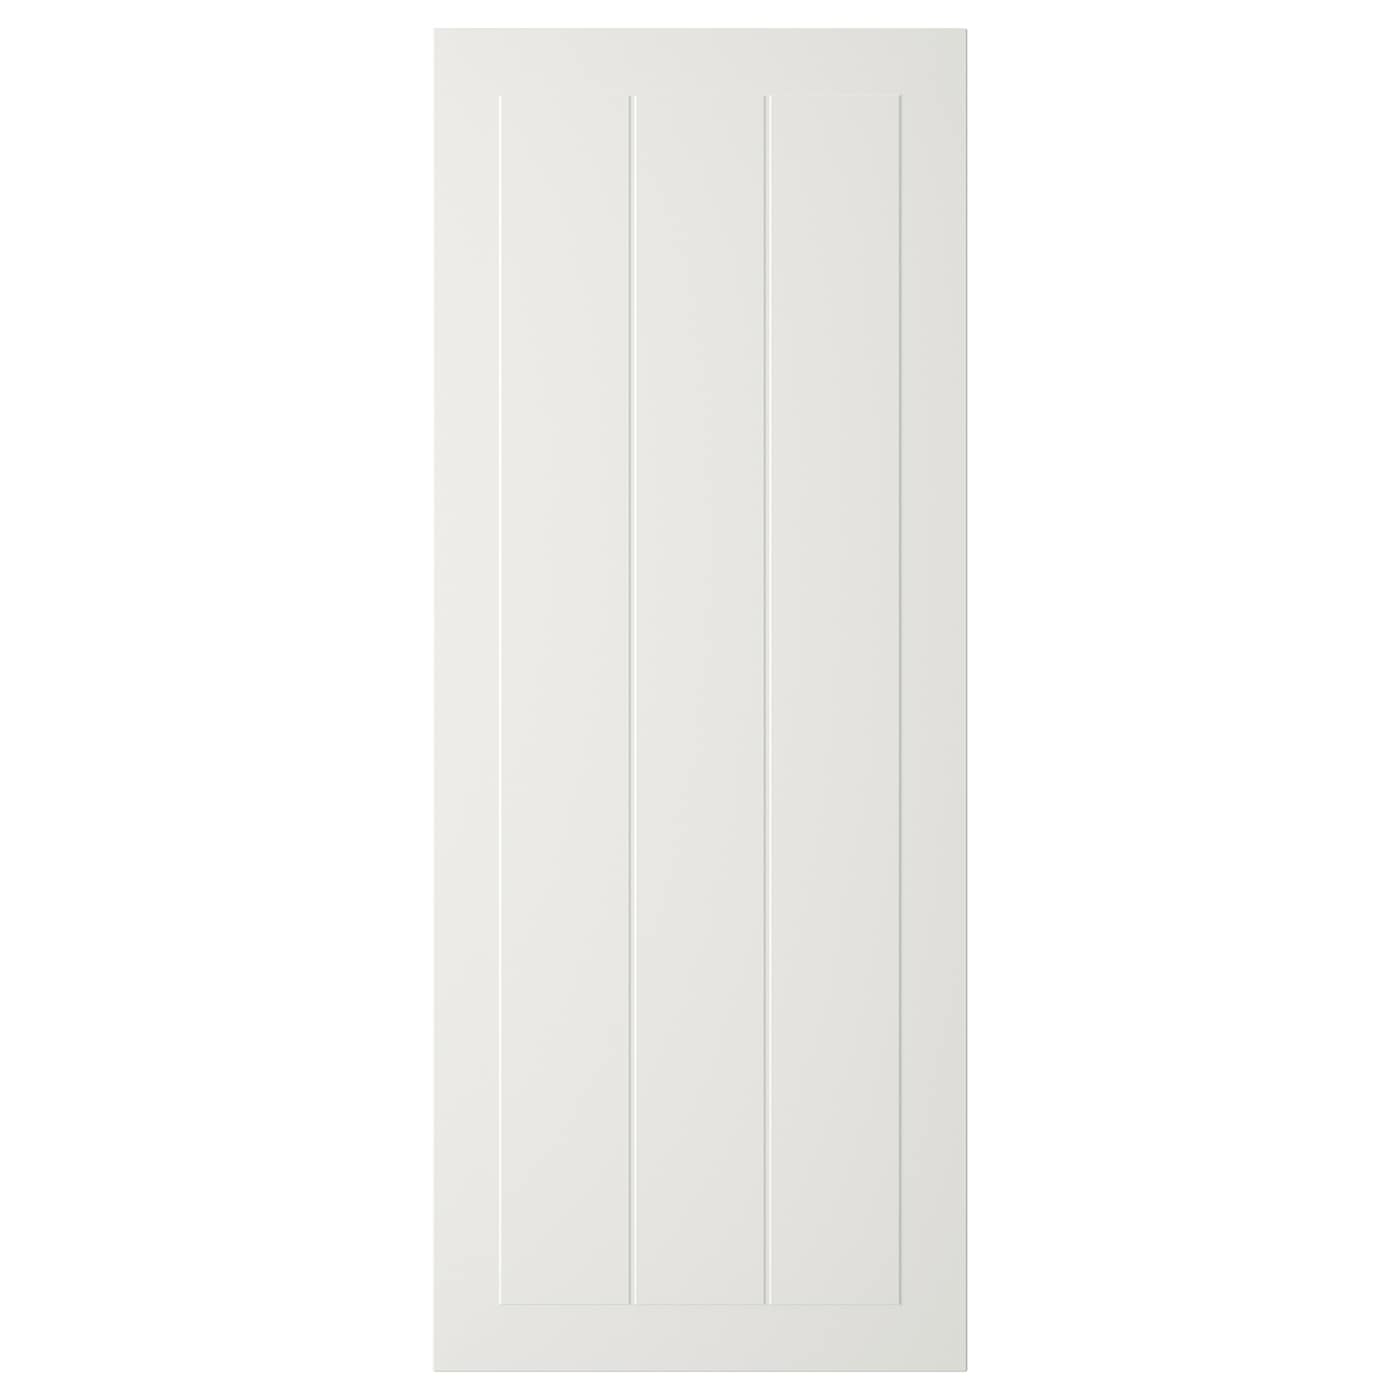 Фасад - IKEA STENSUND, 100х40 см, белый, СТЕНСУНД ИКЕА